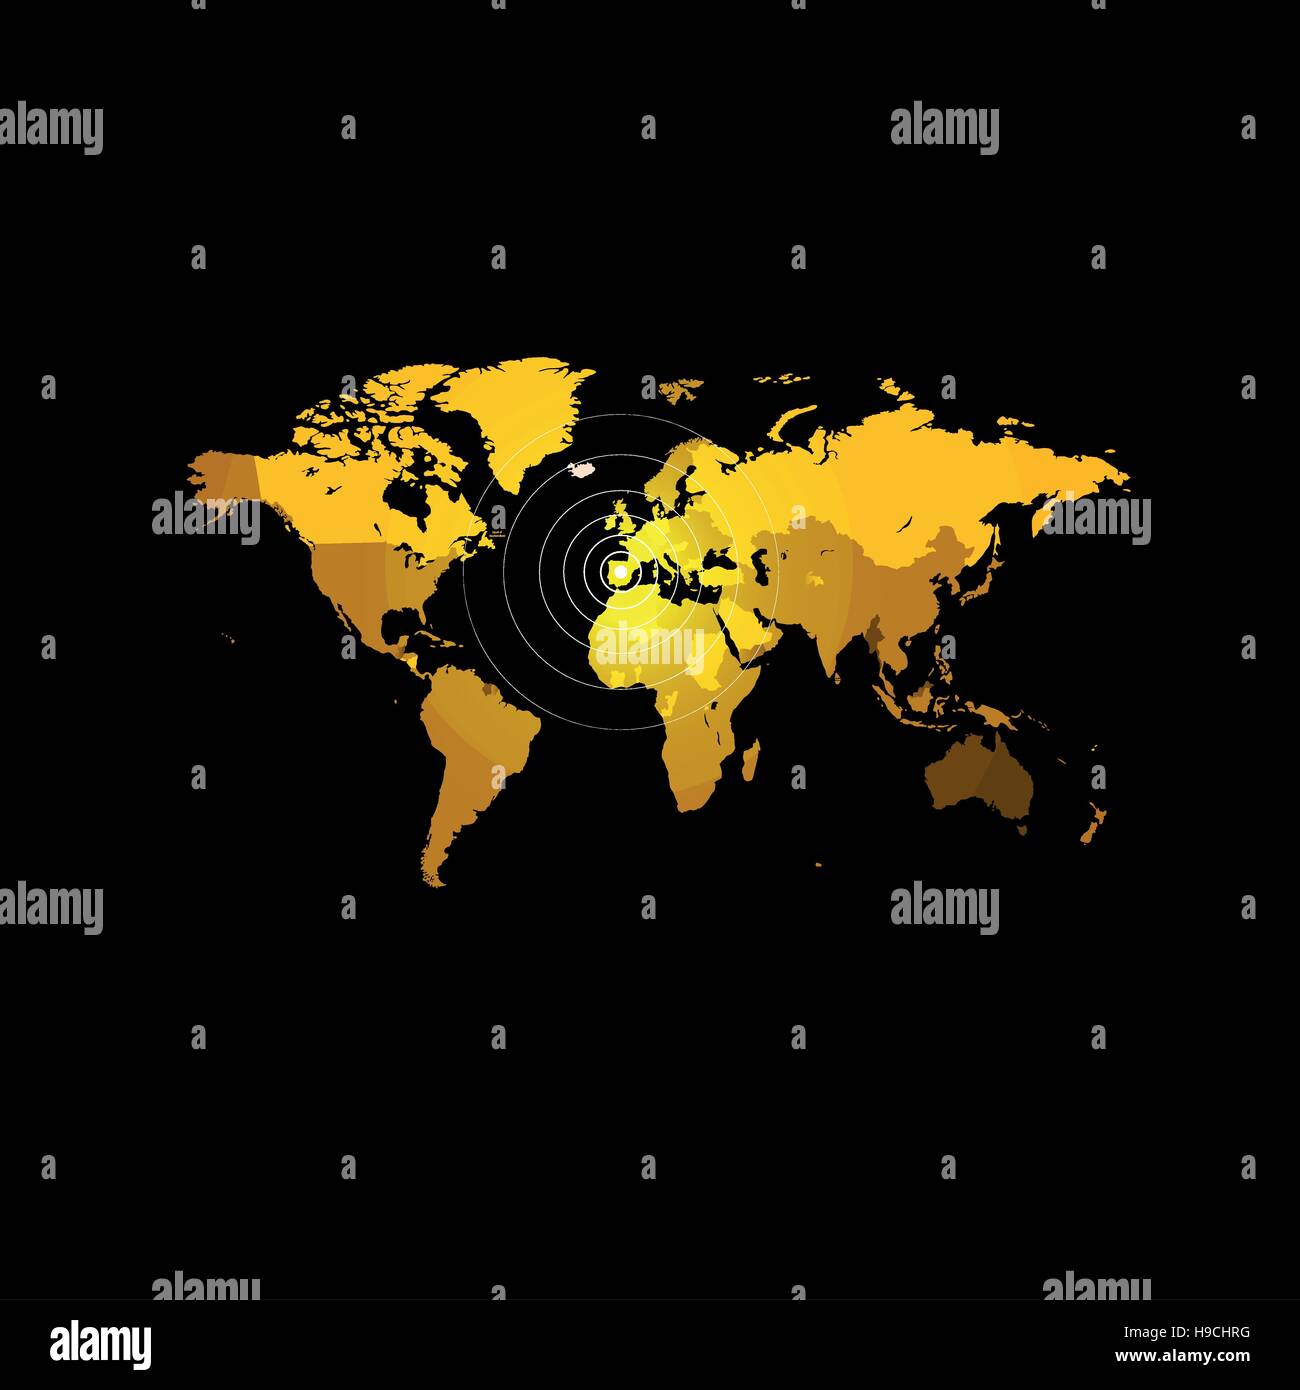 Carte du monde de couleur orange sur fond noir. Globe design toile de fond. L'élément de la cartographie papier peint. L'emplacement géographique de l'image. Illustration vecteur de continents. Illustration de Vecteur